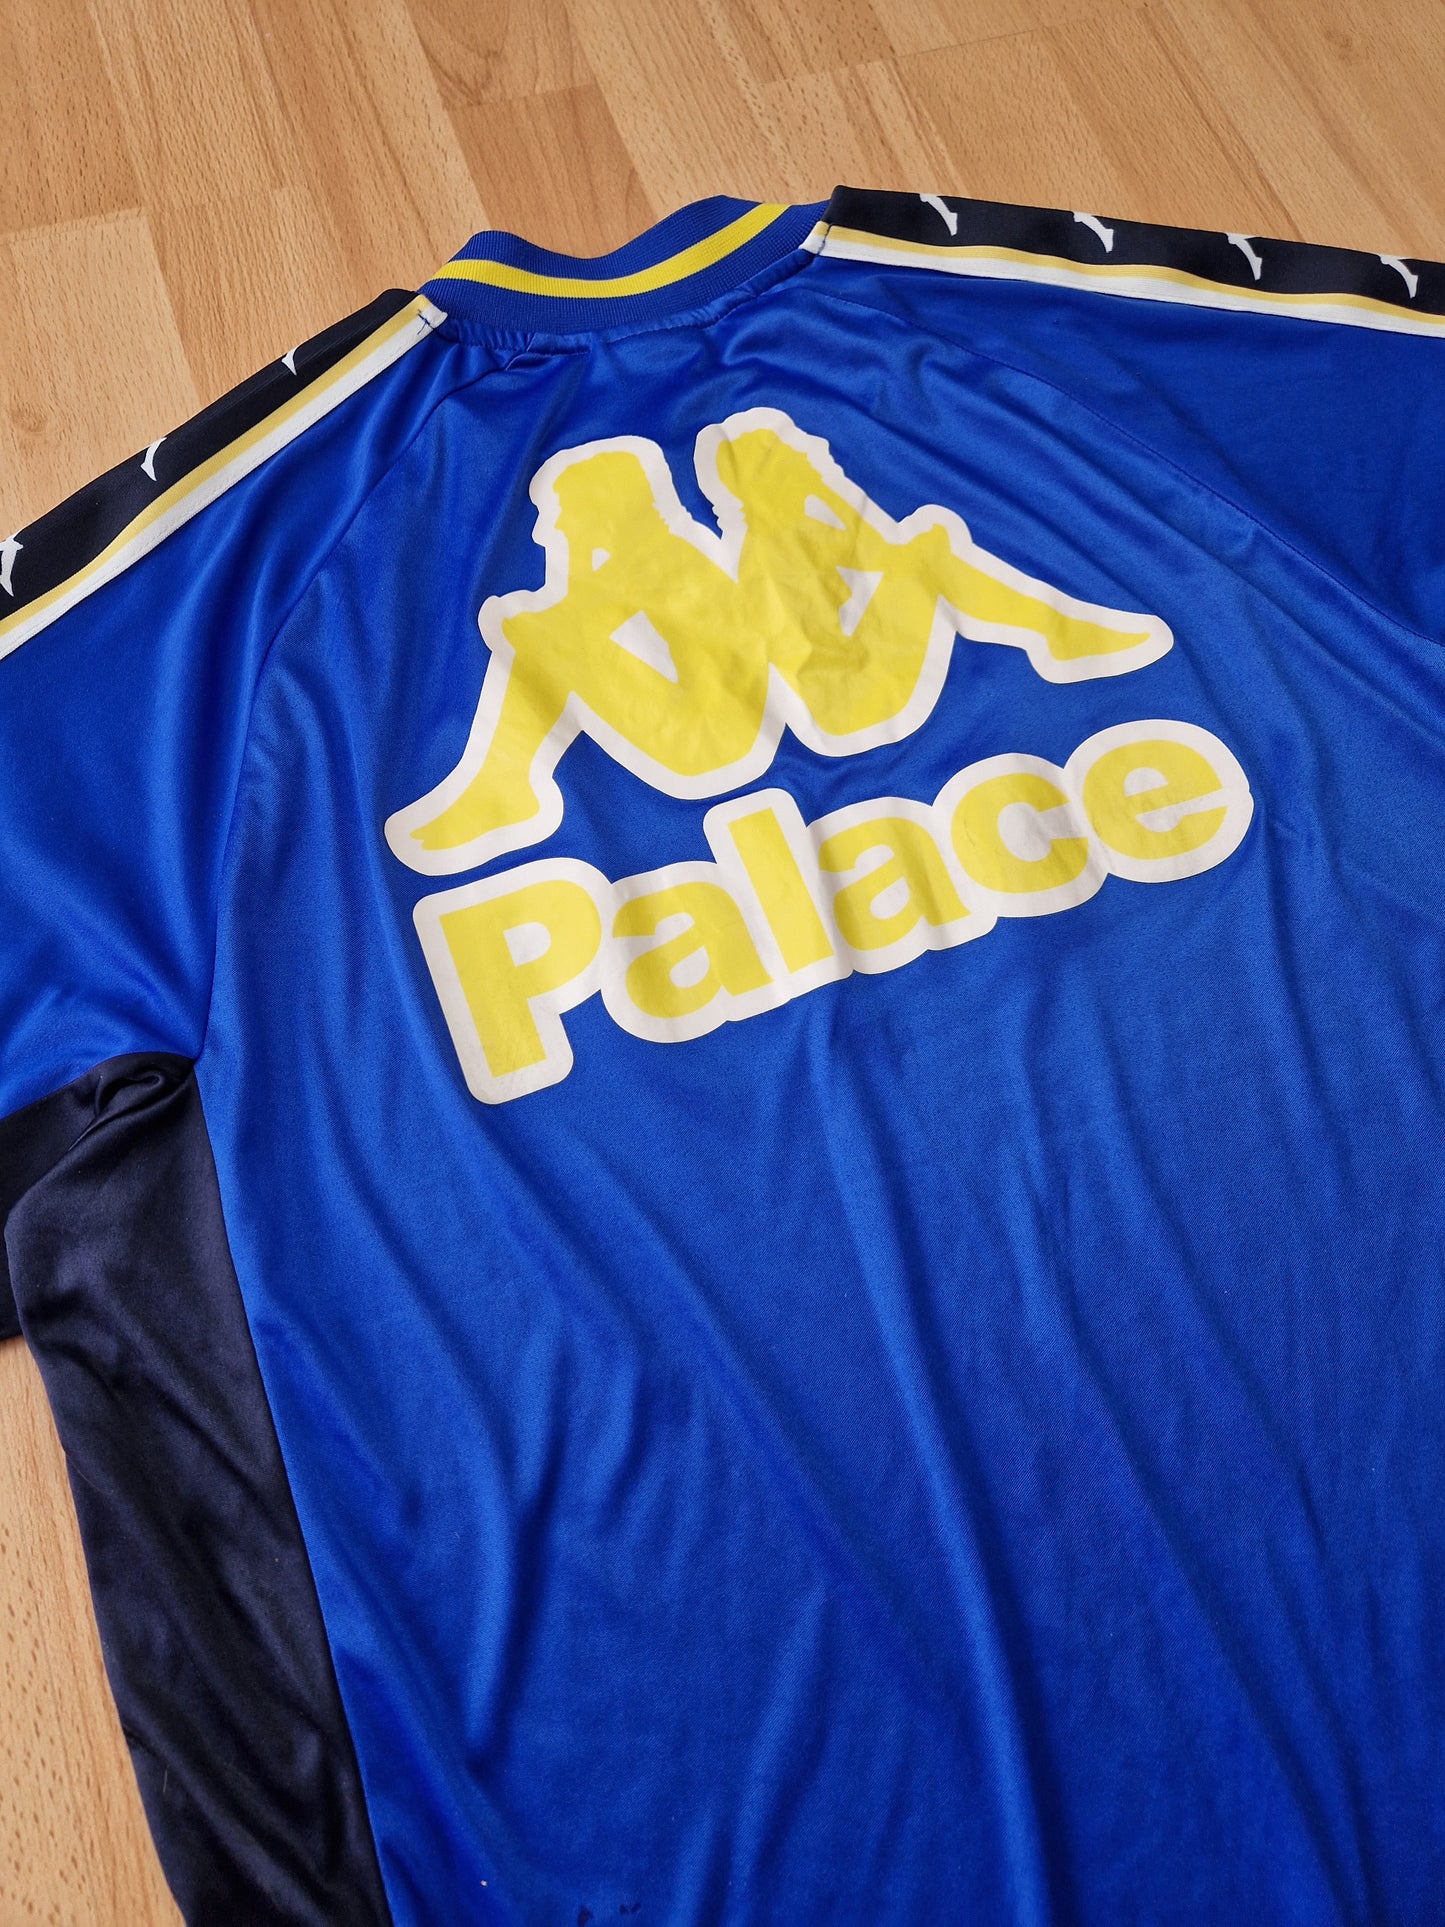 Palace x Kappa Football jersey (XL)